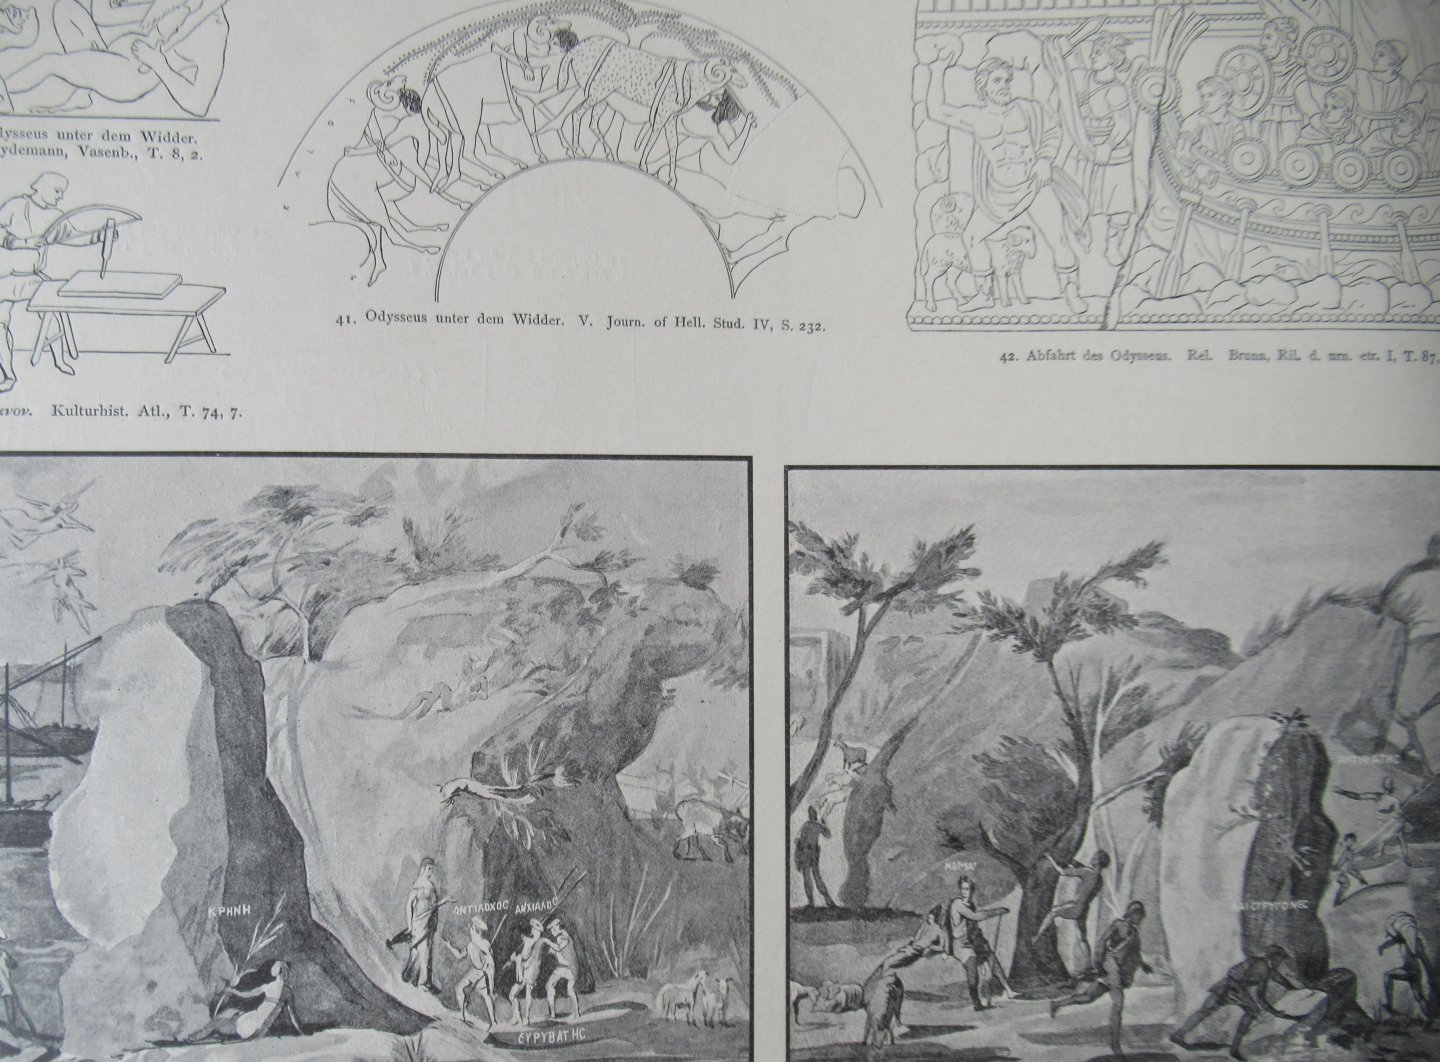 Engelmann, R - Bilder-atlas Homer. Sechsundreissig tafeln mit erläuterndem texte